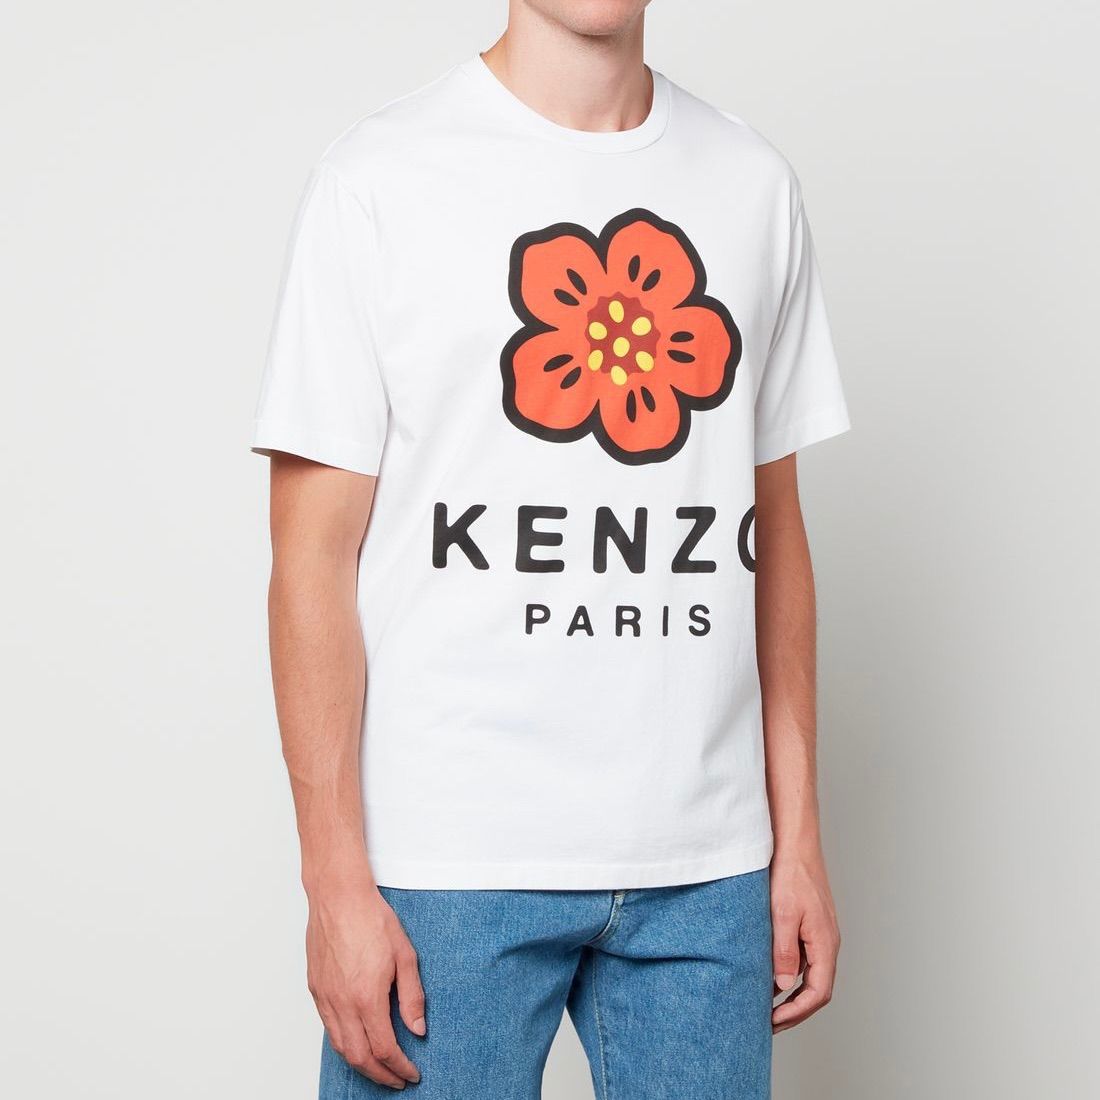 Tシャツ/カットソー(半袖/袖なし)KENZO  BOKE FLOWER モチーフT  NIGO